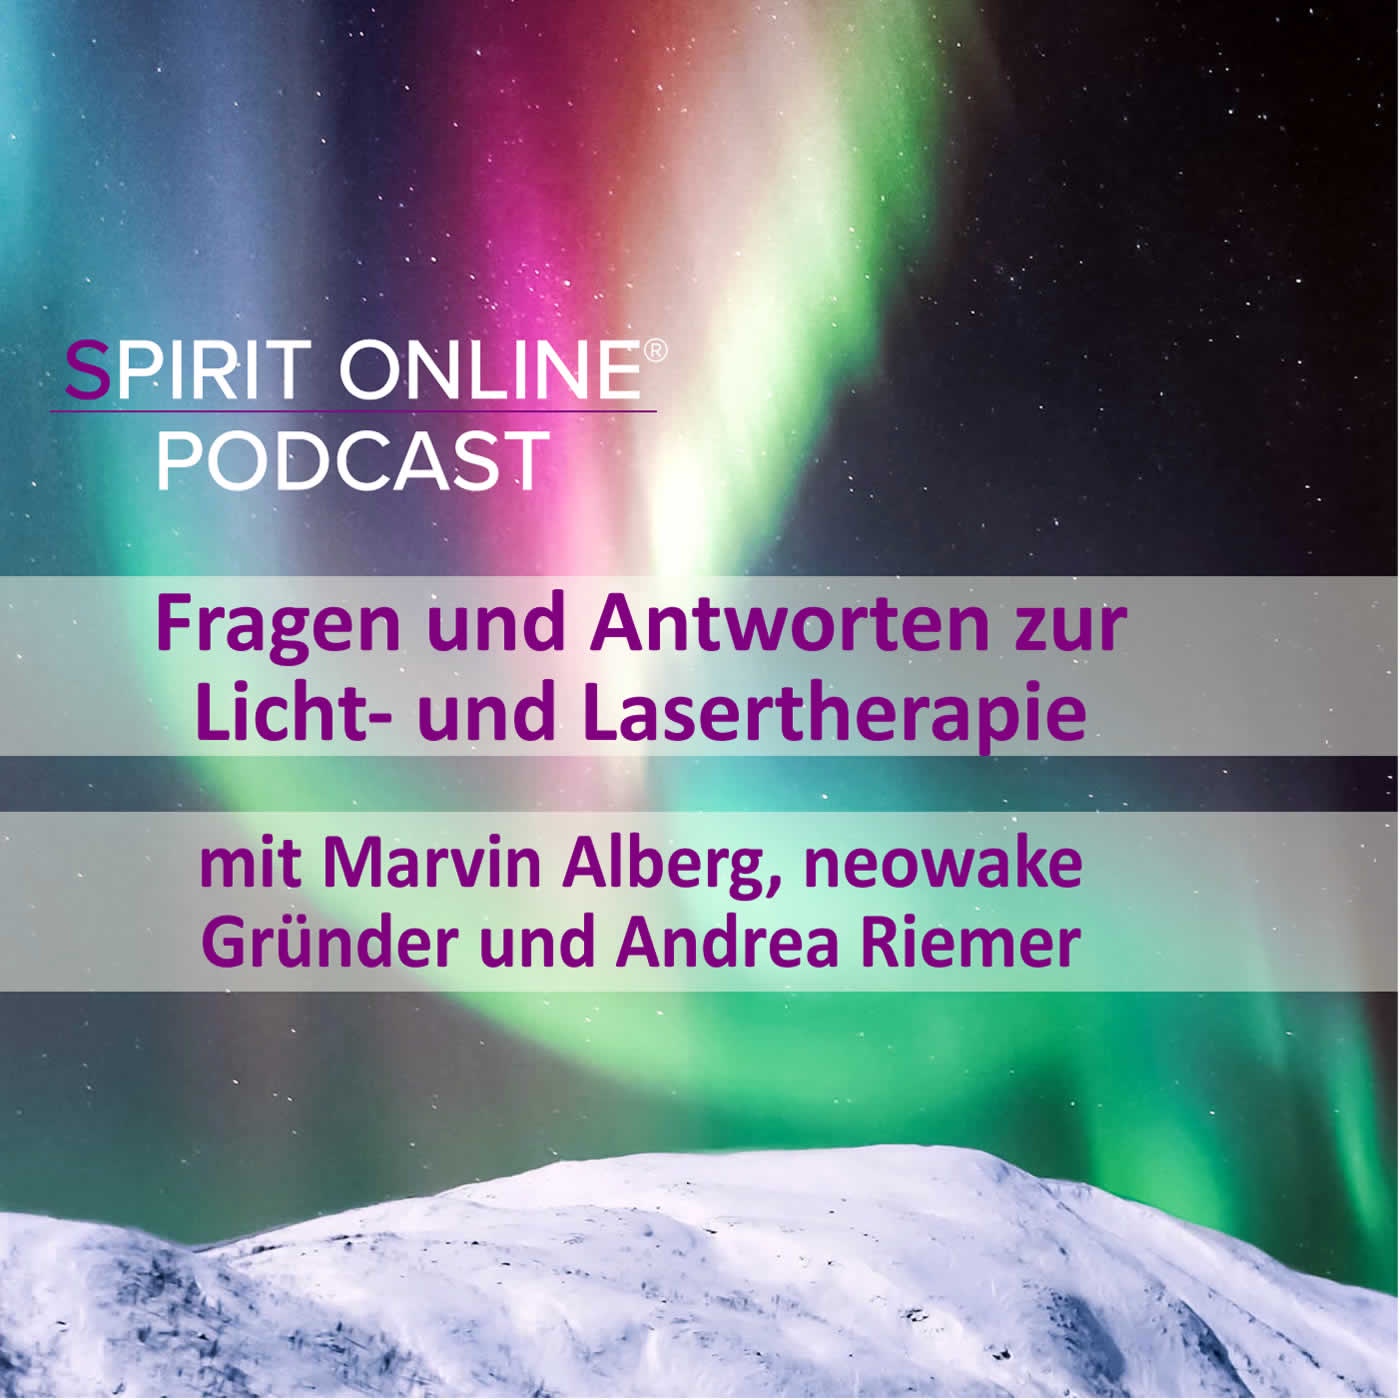 Fragen und Antworten zur Licht- und Lasertherapie - Podcast mit Marvin Alberg